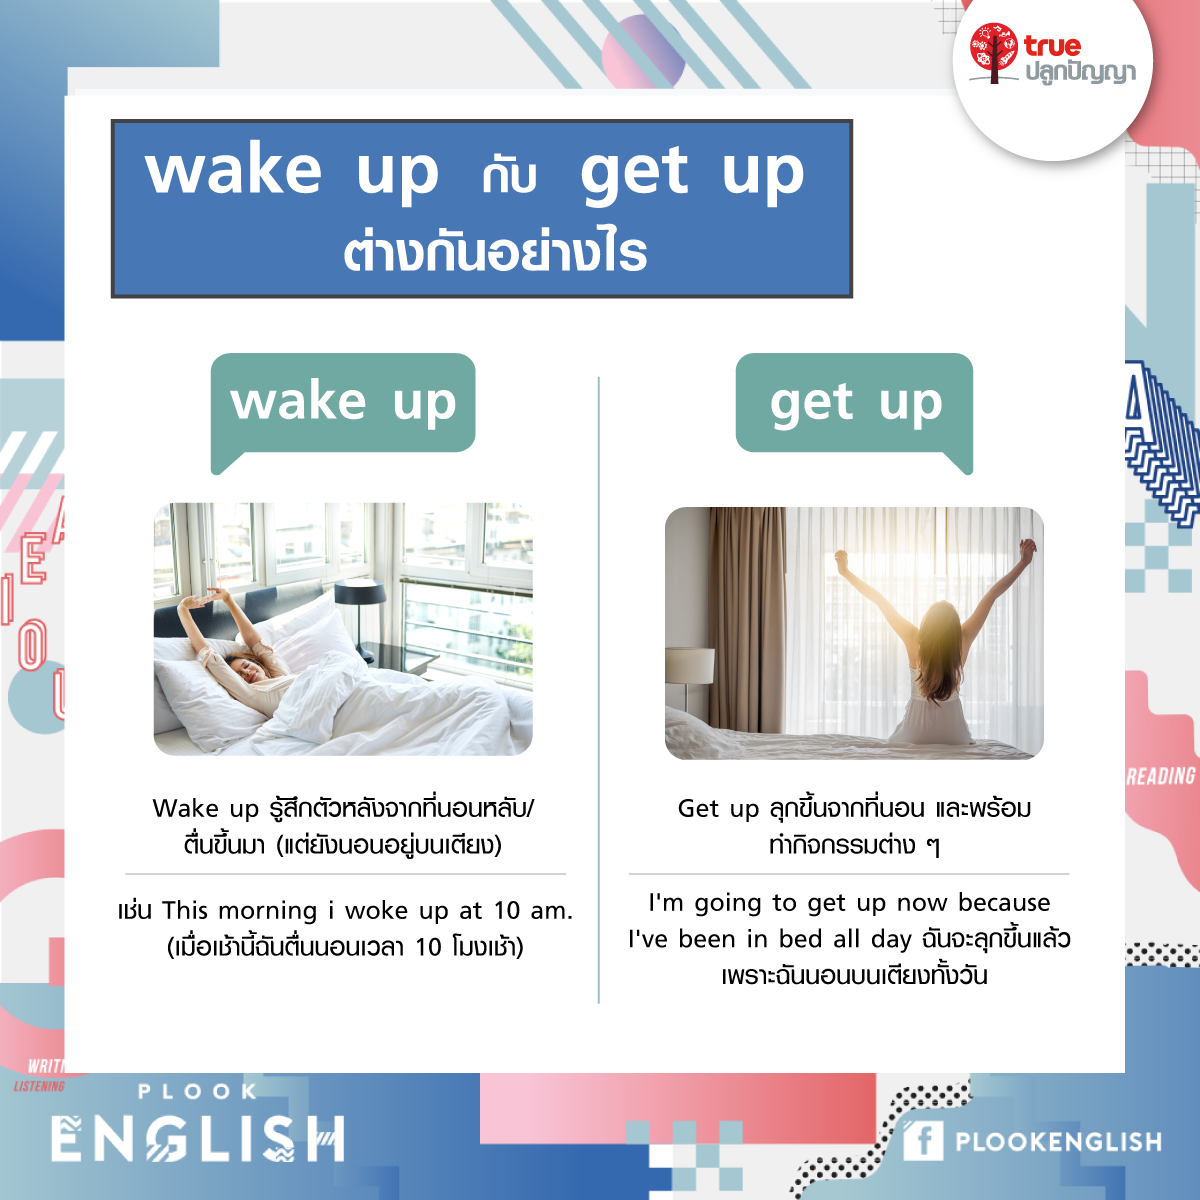 wake up กับ get up ต่างกันอย่างไร